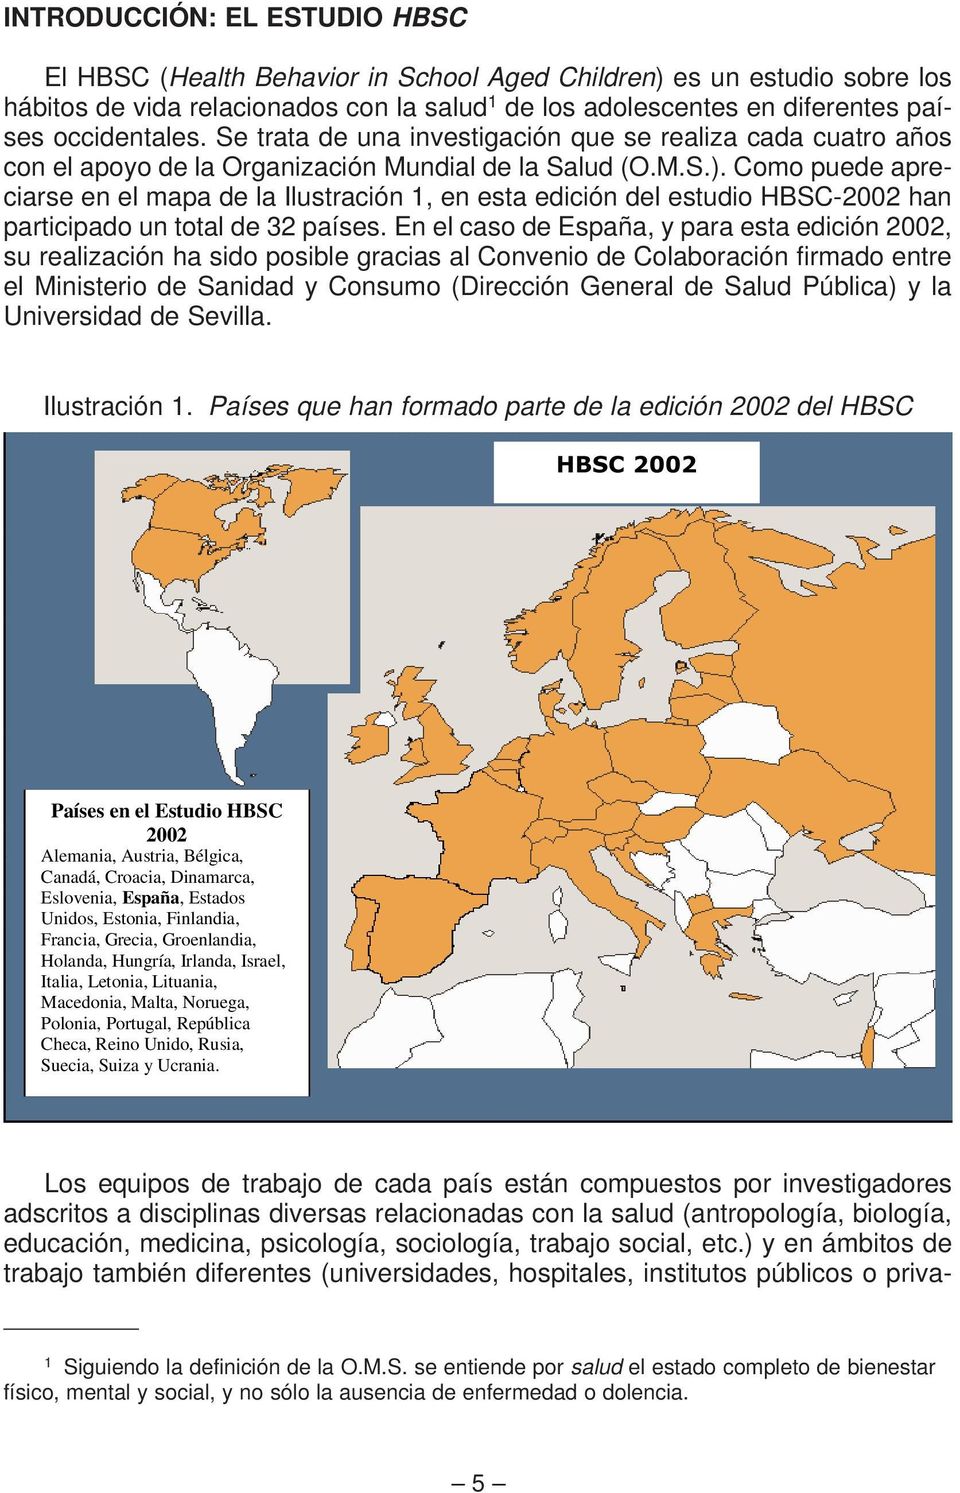 Como puede apreciarse en el mapa de la Ilustración 1, en esta edición del estudio HBSC-2002 han participado un total de 32 países.